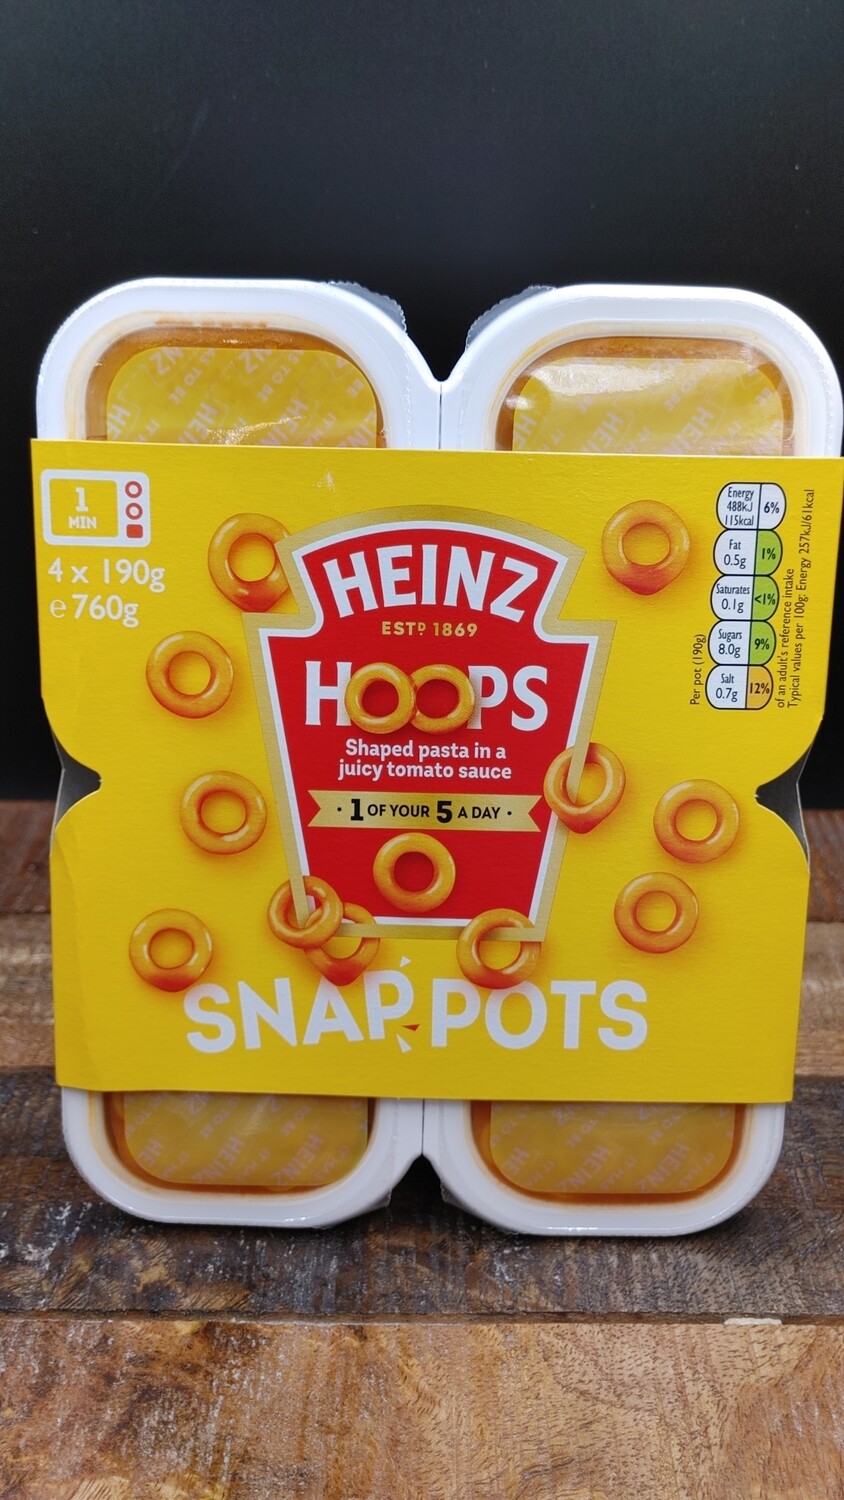 Heinz Hoops Snap Pots 4x190g